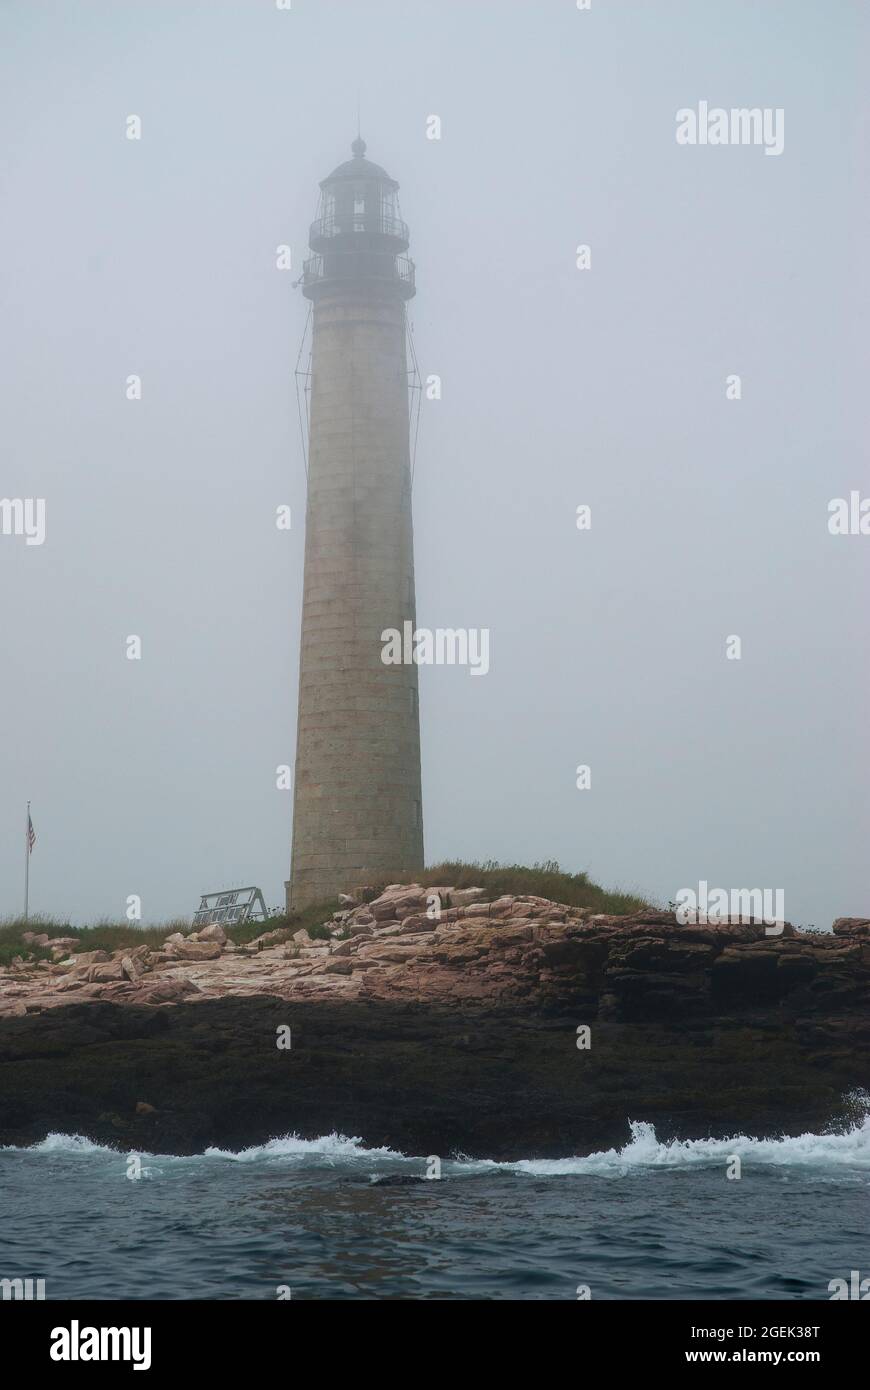 Nebel umgibt den Petit Manan Leuchtturm, den zweithöchsten Leuchtturm in Maine. Es ist Teil des Coastal Islands Wildlife Refuge für Vögel. Stockfoto